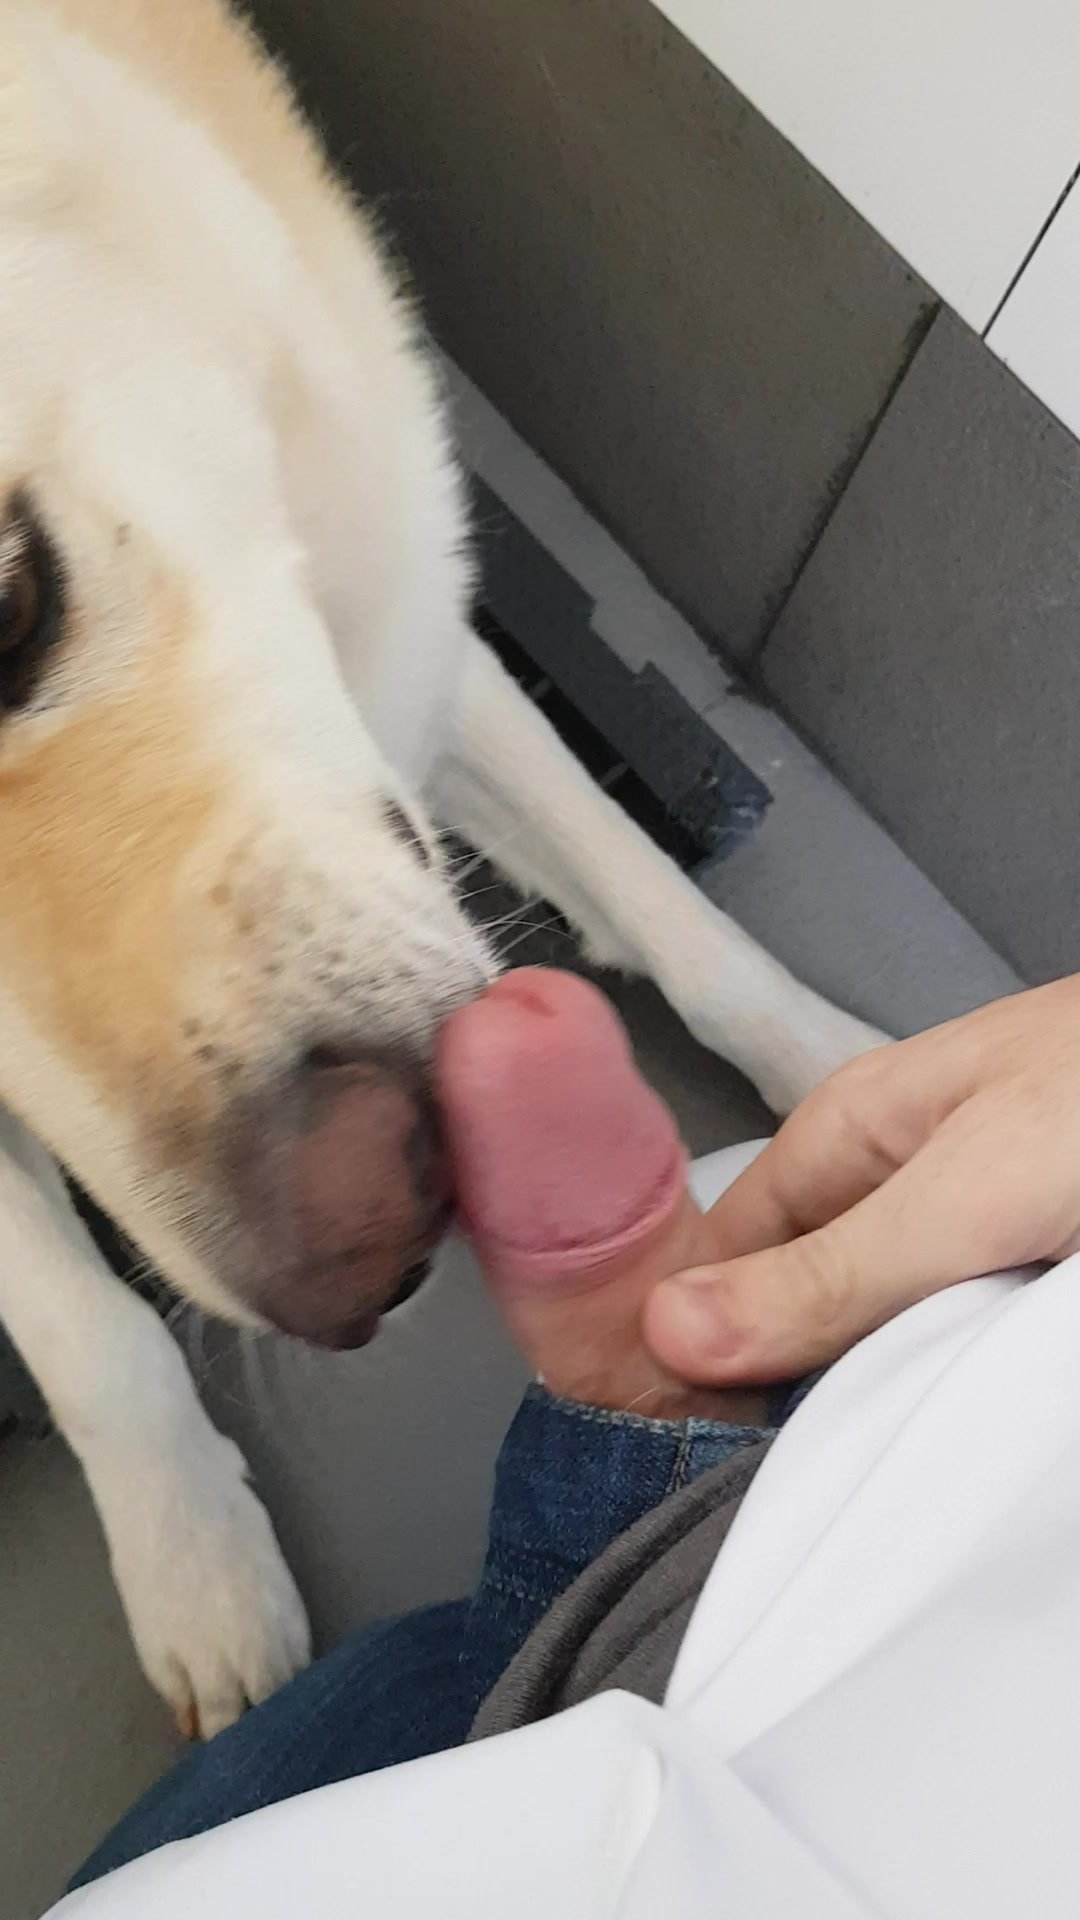 Dog Lick My Dick - Porn photos, watch close-up sex photos, d